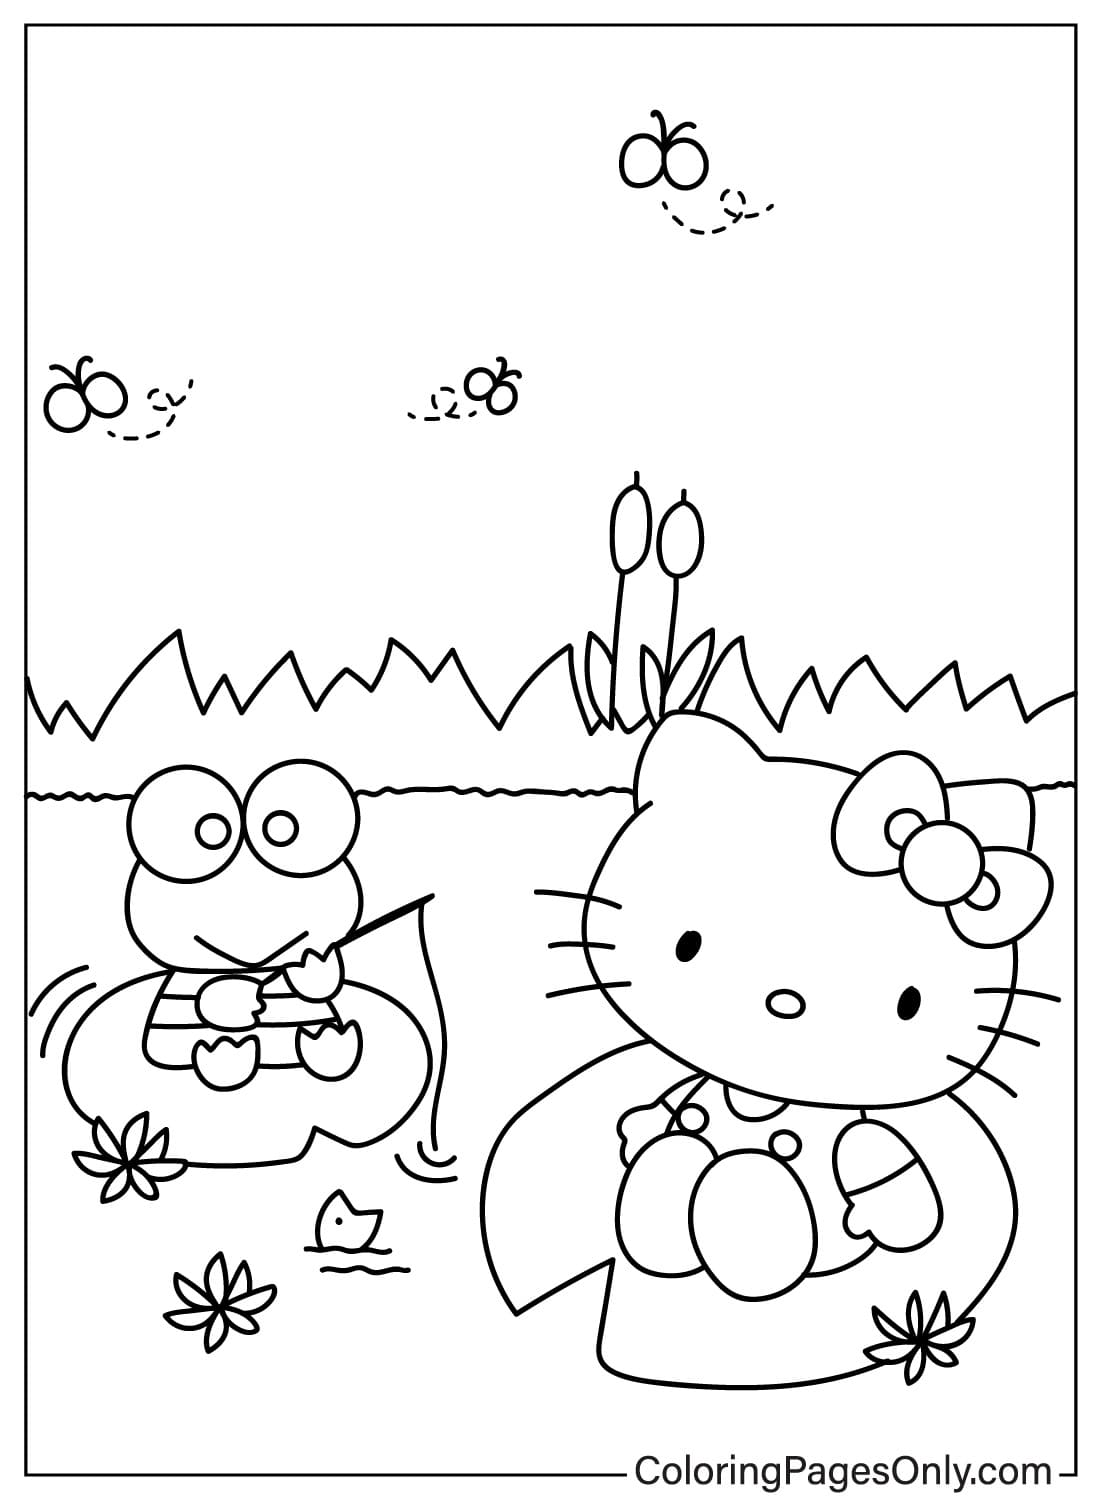 Keroppi, Página para colorear de Hello Kitty de Keroppi